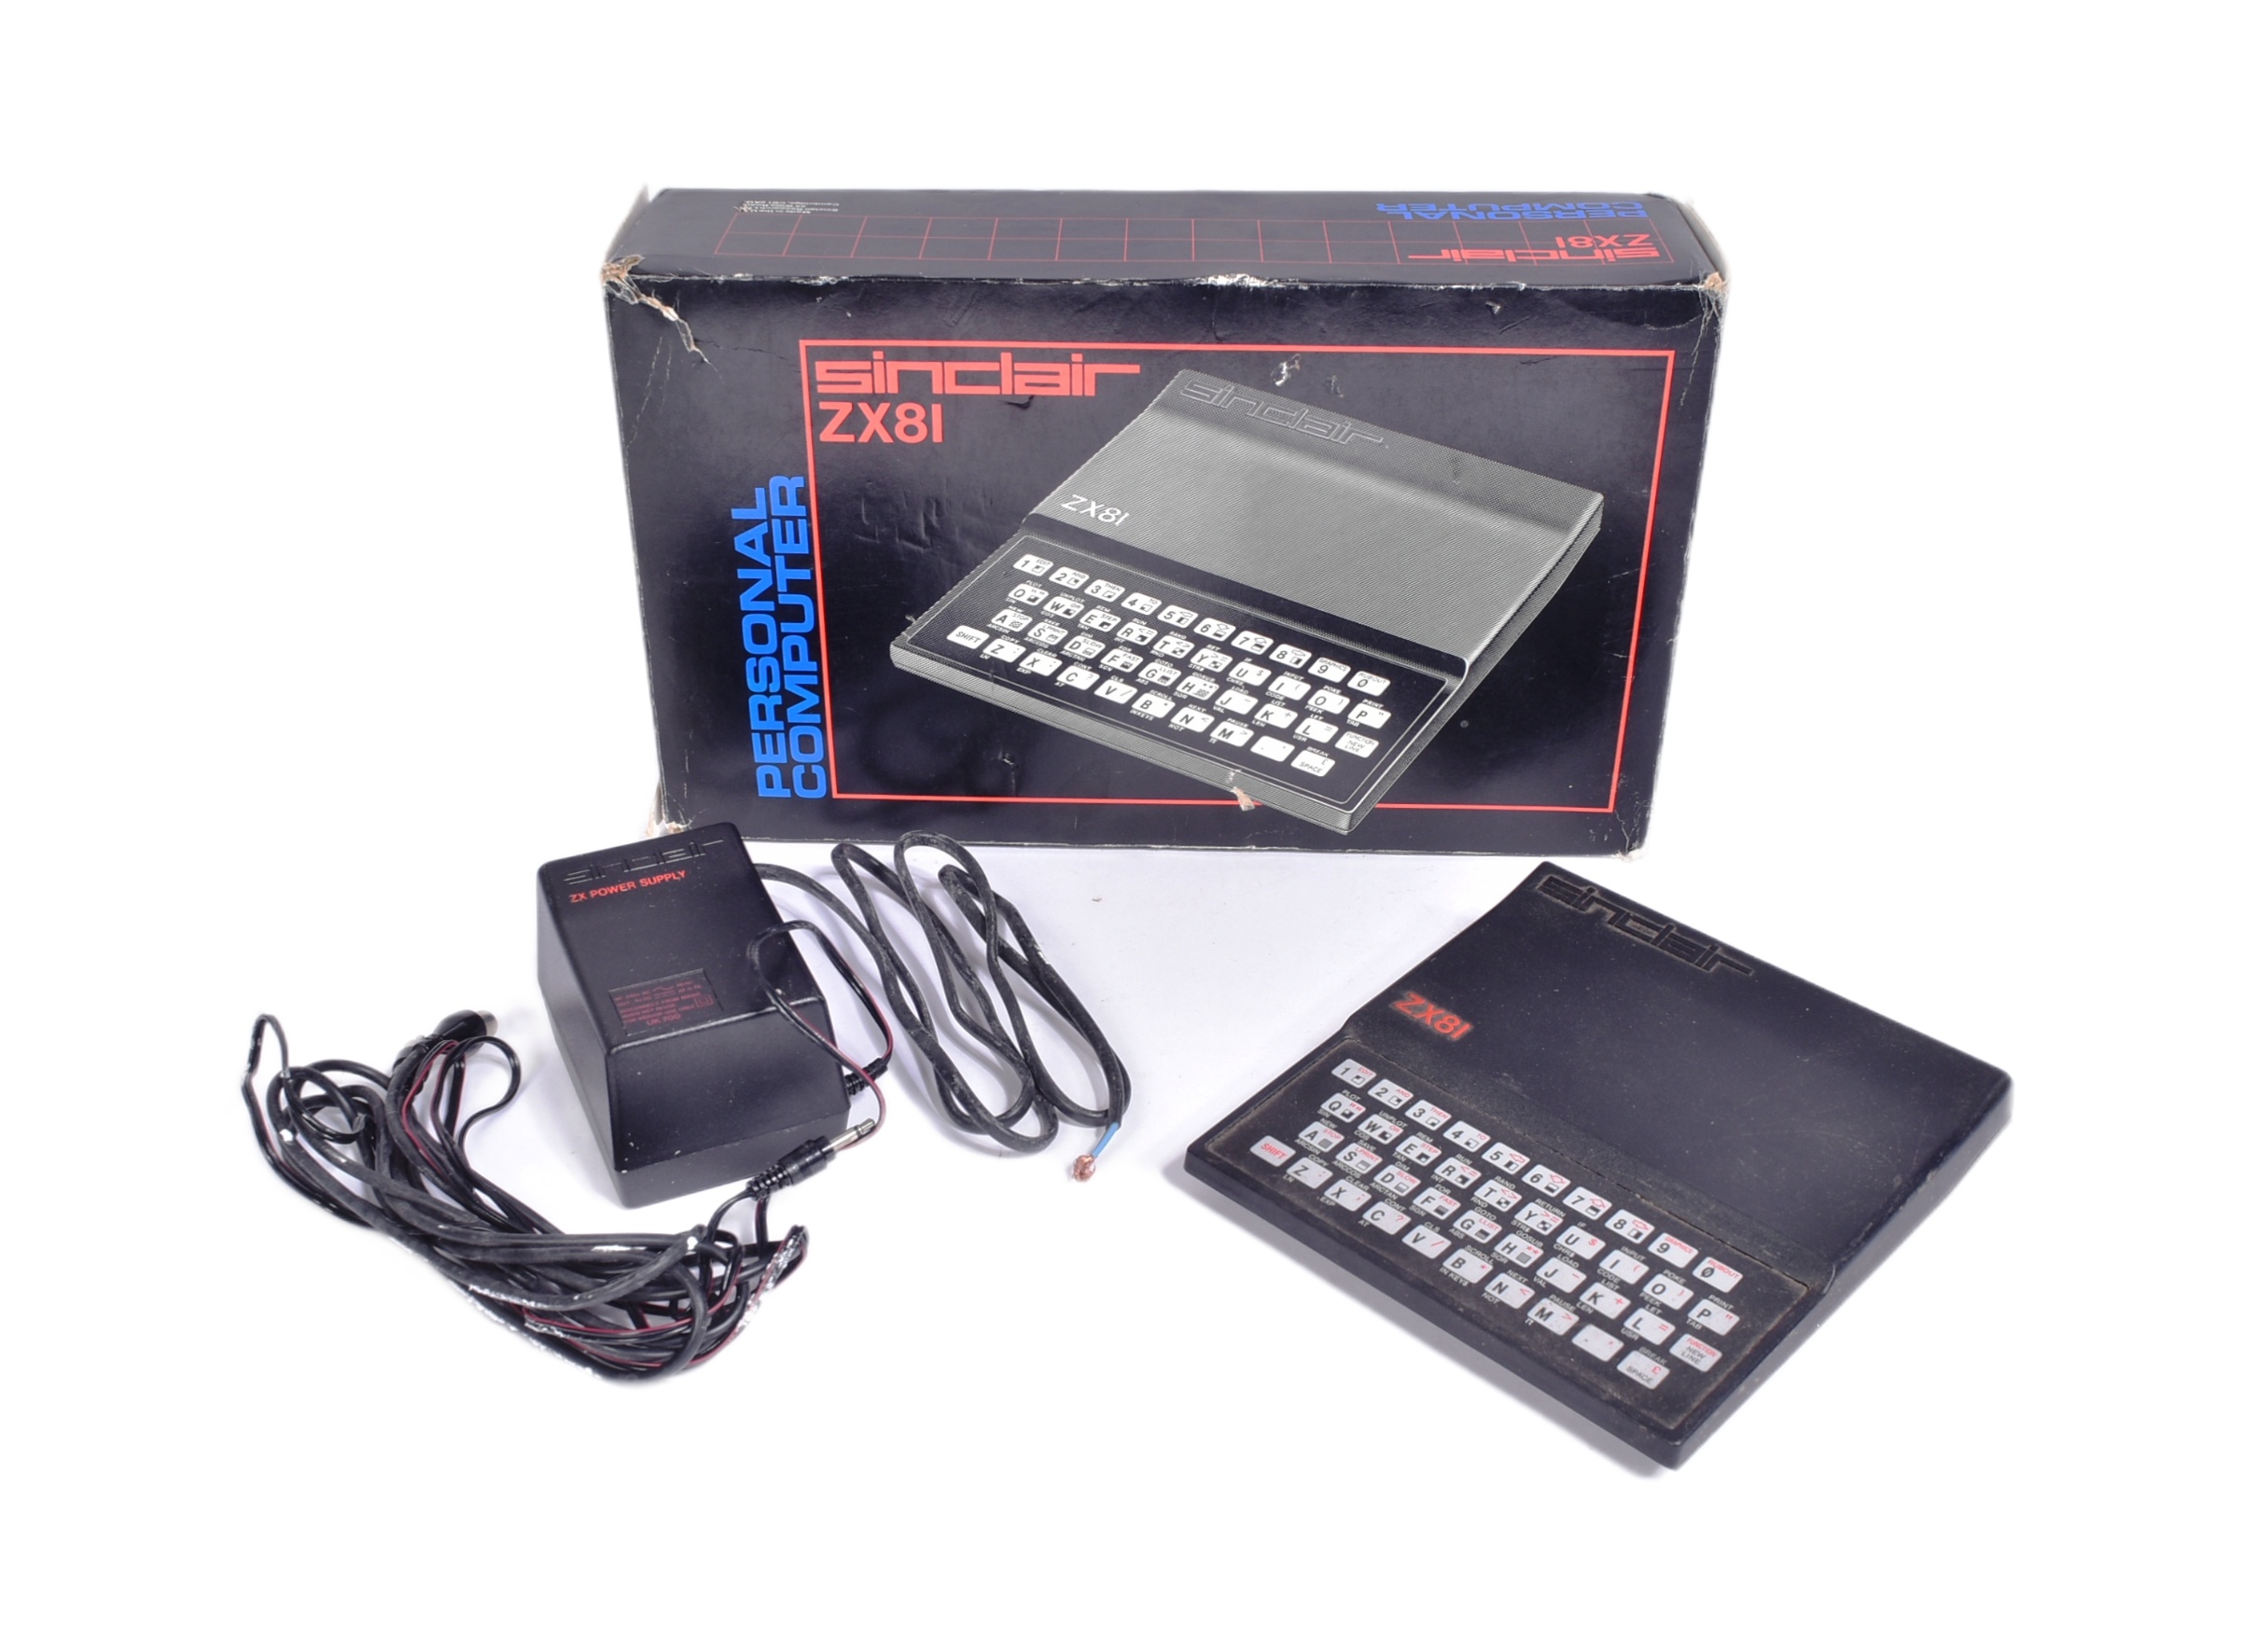 RETRO GAMING - VINTAGE SINCLAIR ZX81 PERSONAL COMPUTER